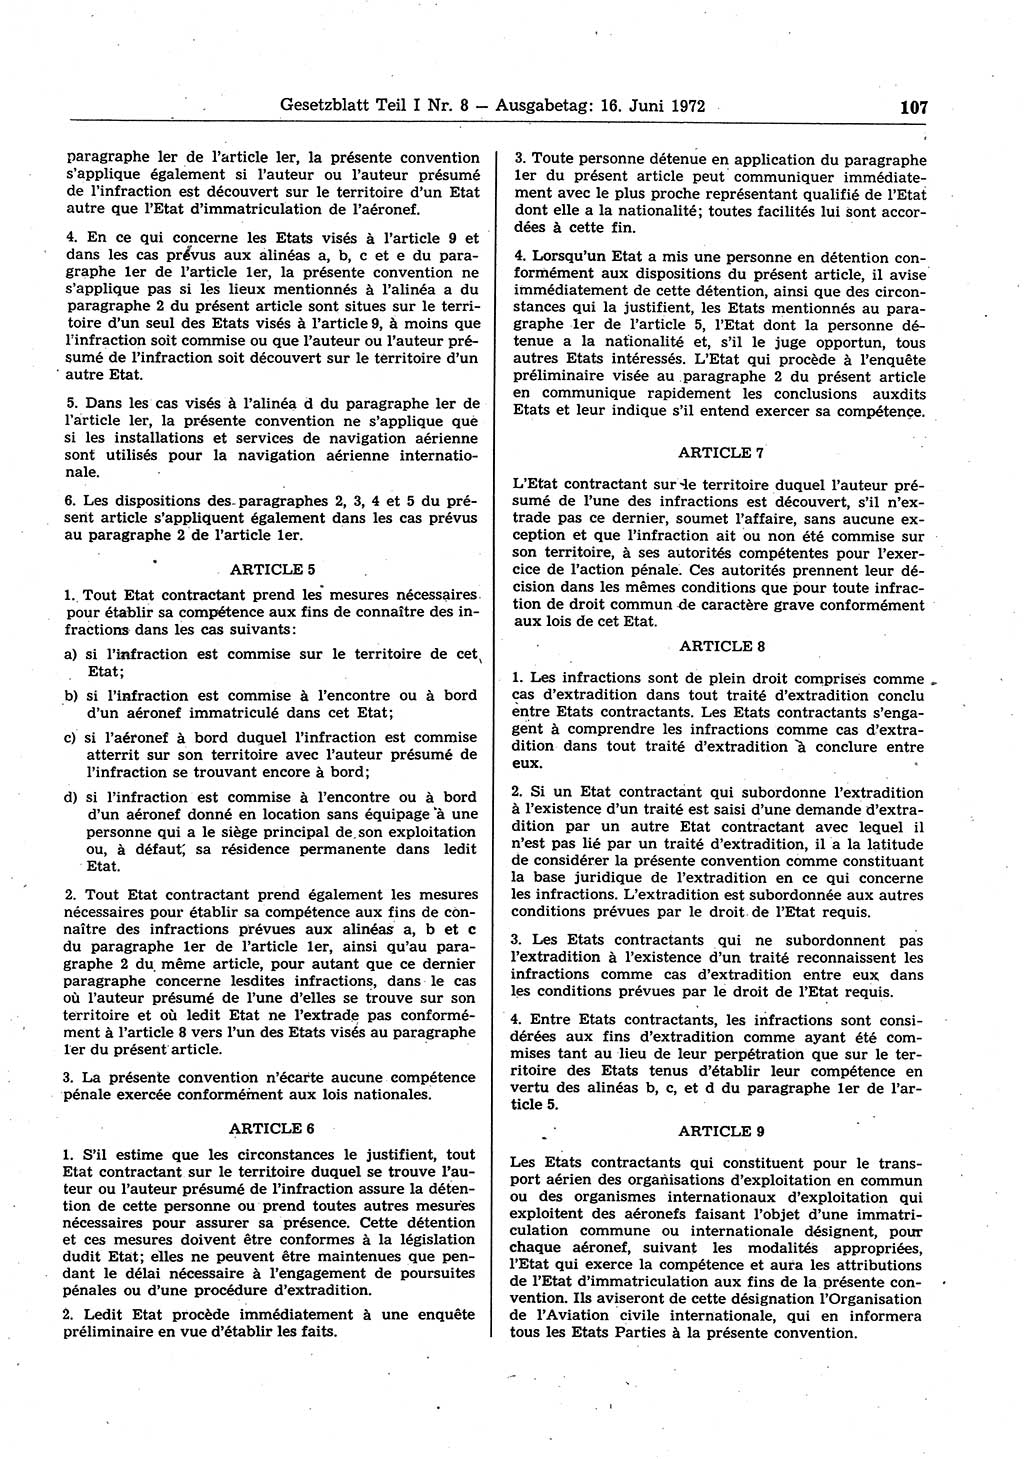 Gesetzblatt (GBl.) der Deutschen Demokratischen Republik (DDR) Teil Ⅰ 1972, Seite 107 (GBl. DDR Ⅰ 1972, S. 107)